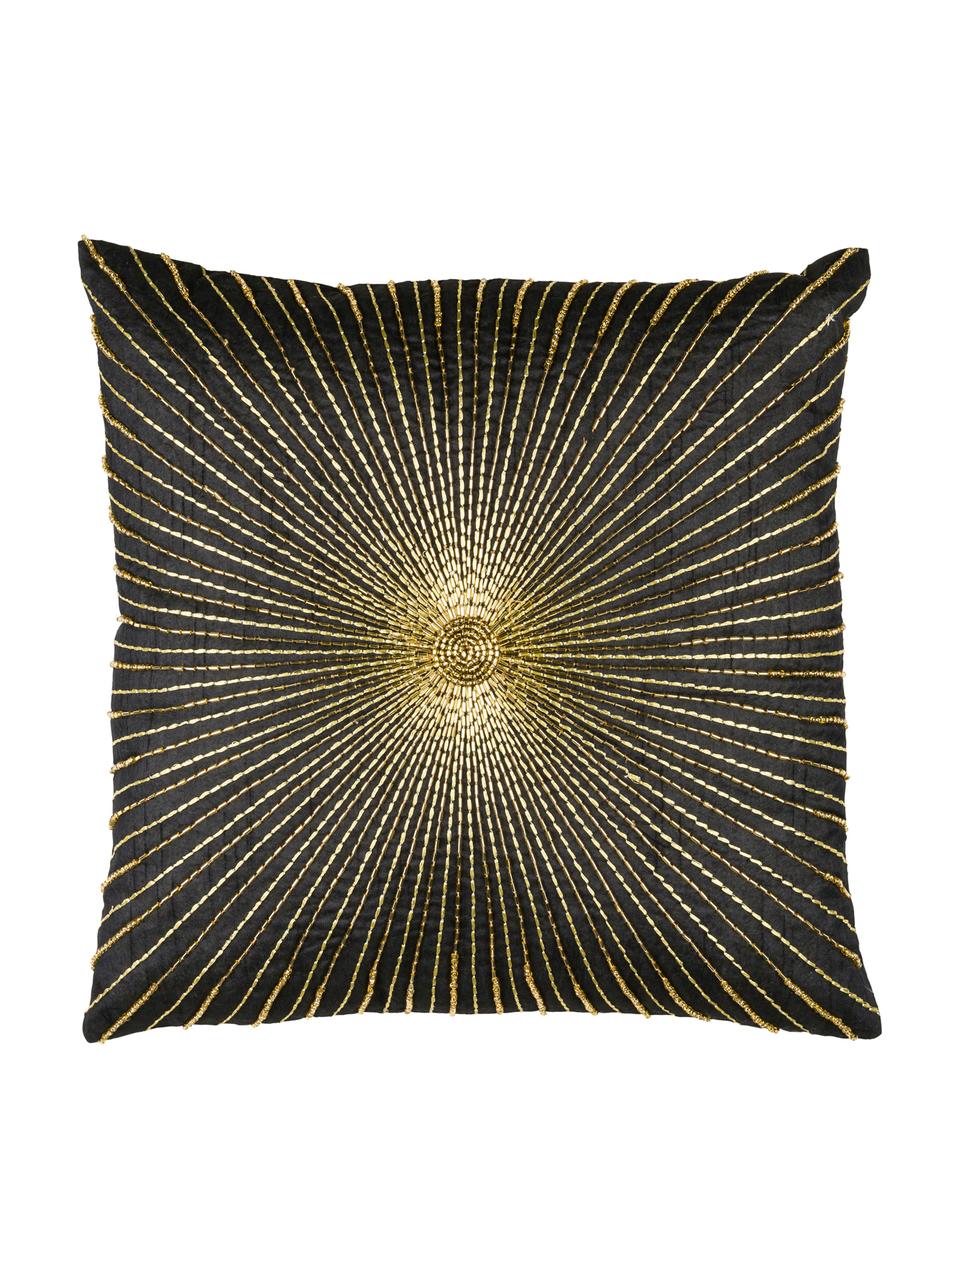 Poszewka na poduszkę z haftem Sunray, 100% poliester, Czarny, odcienie złotego, S 40 x D 40 cm